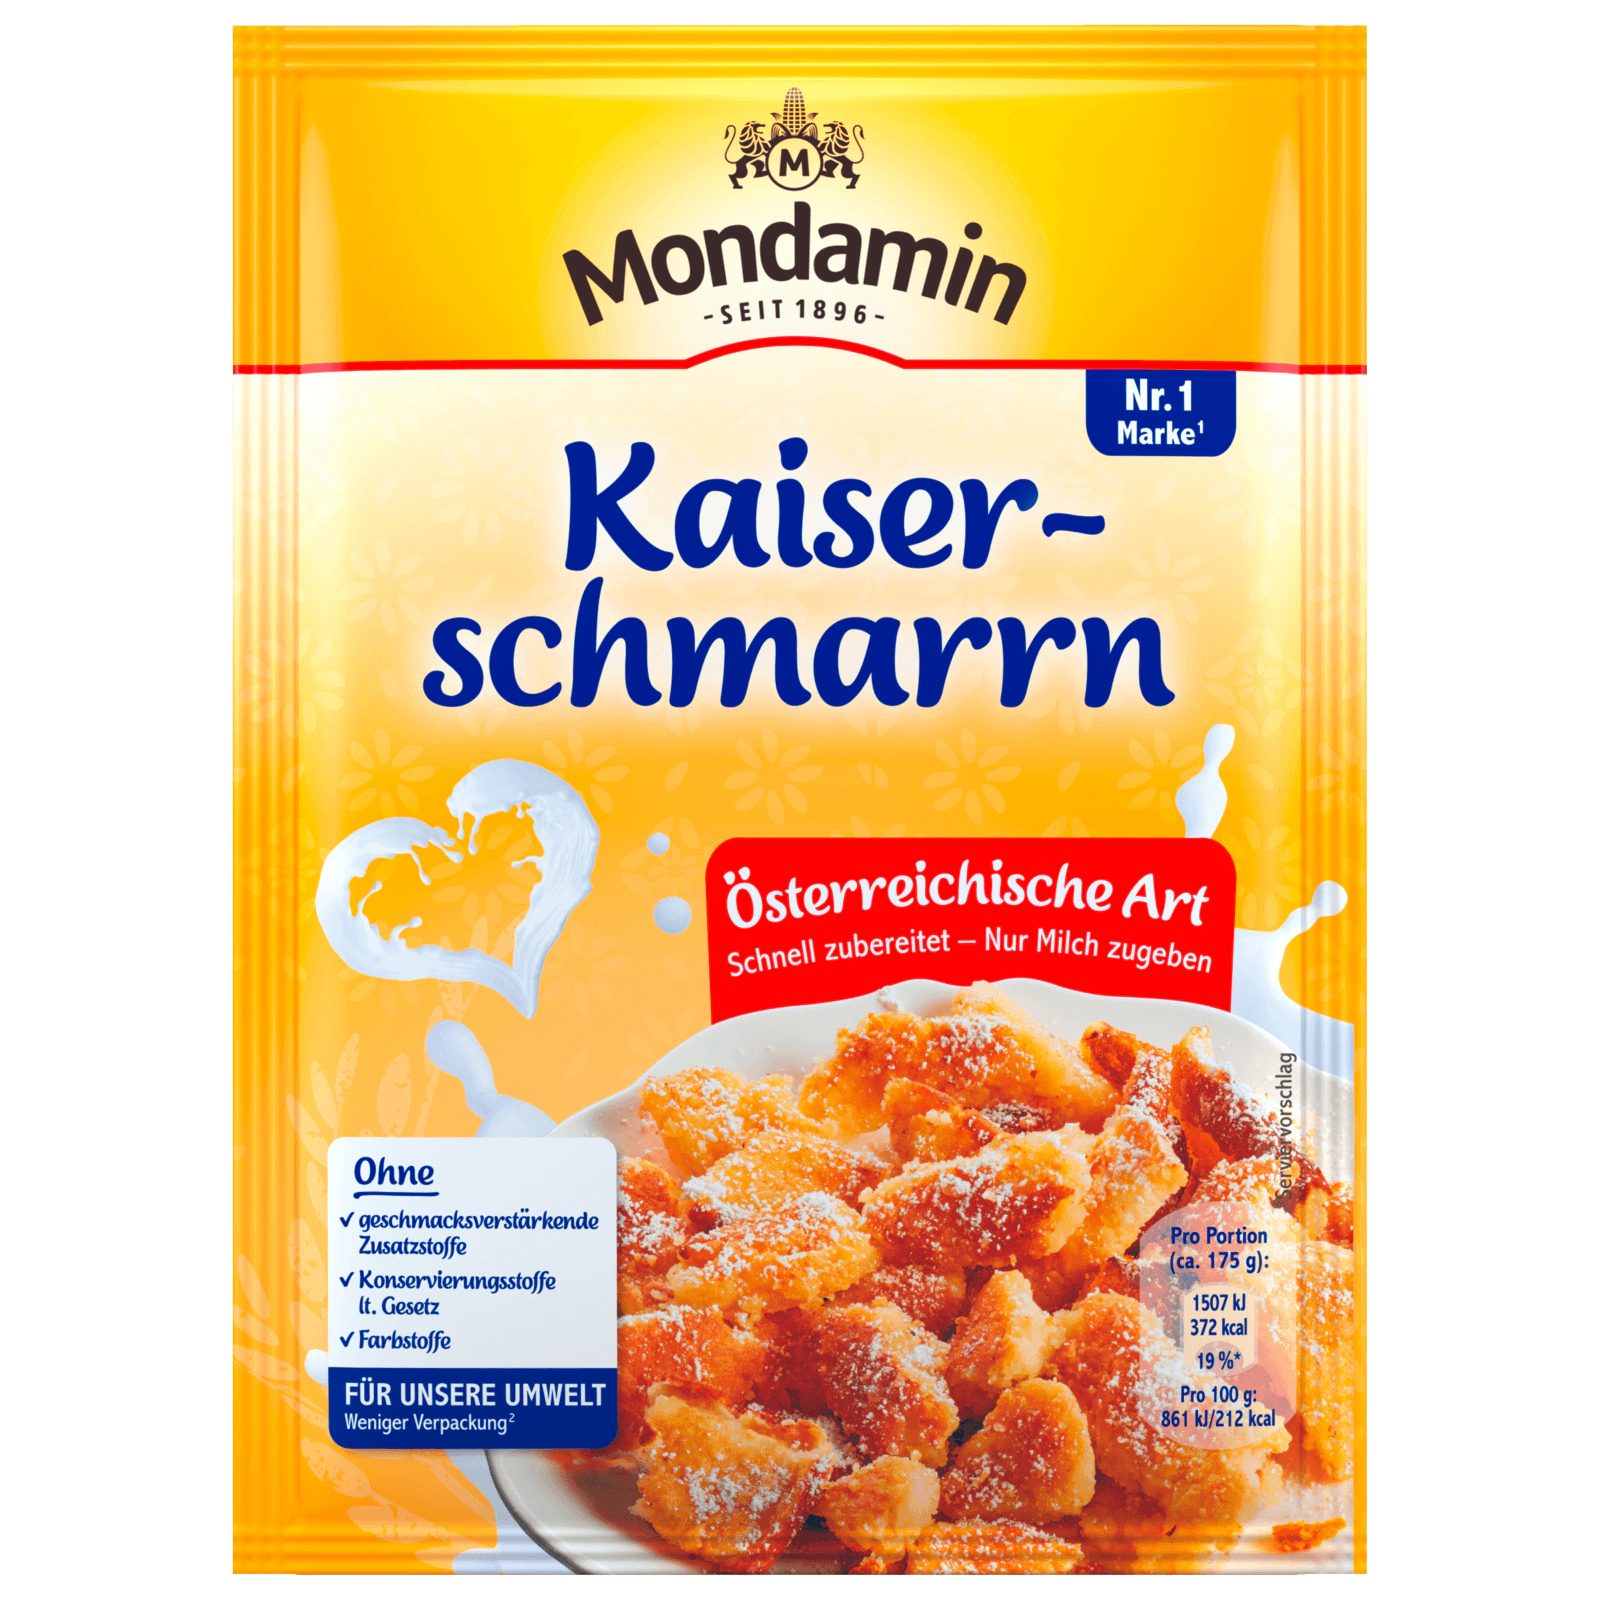 Mondamin Kaiserschmarrn Österreichische Art 135g